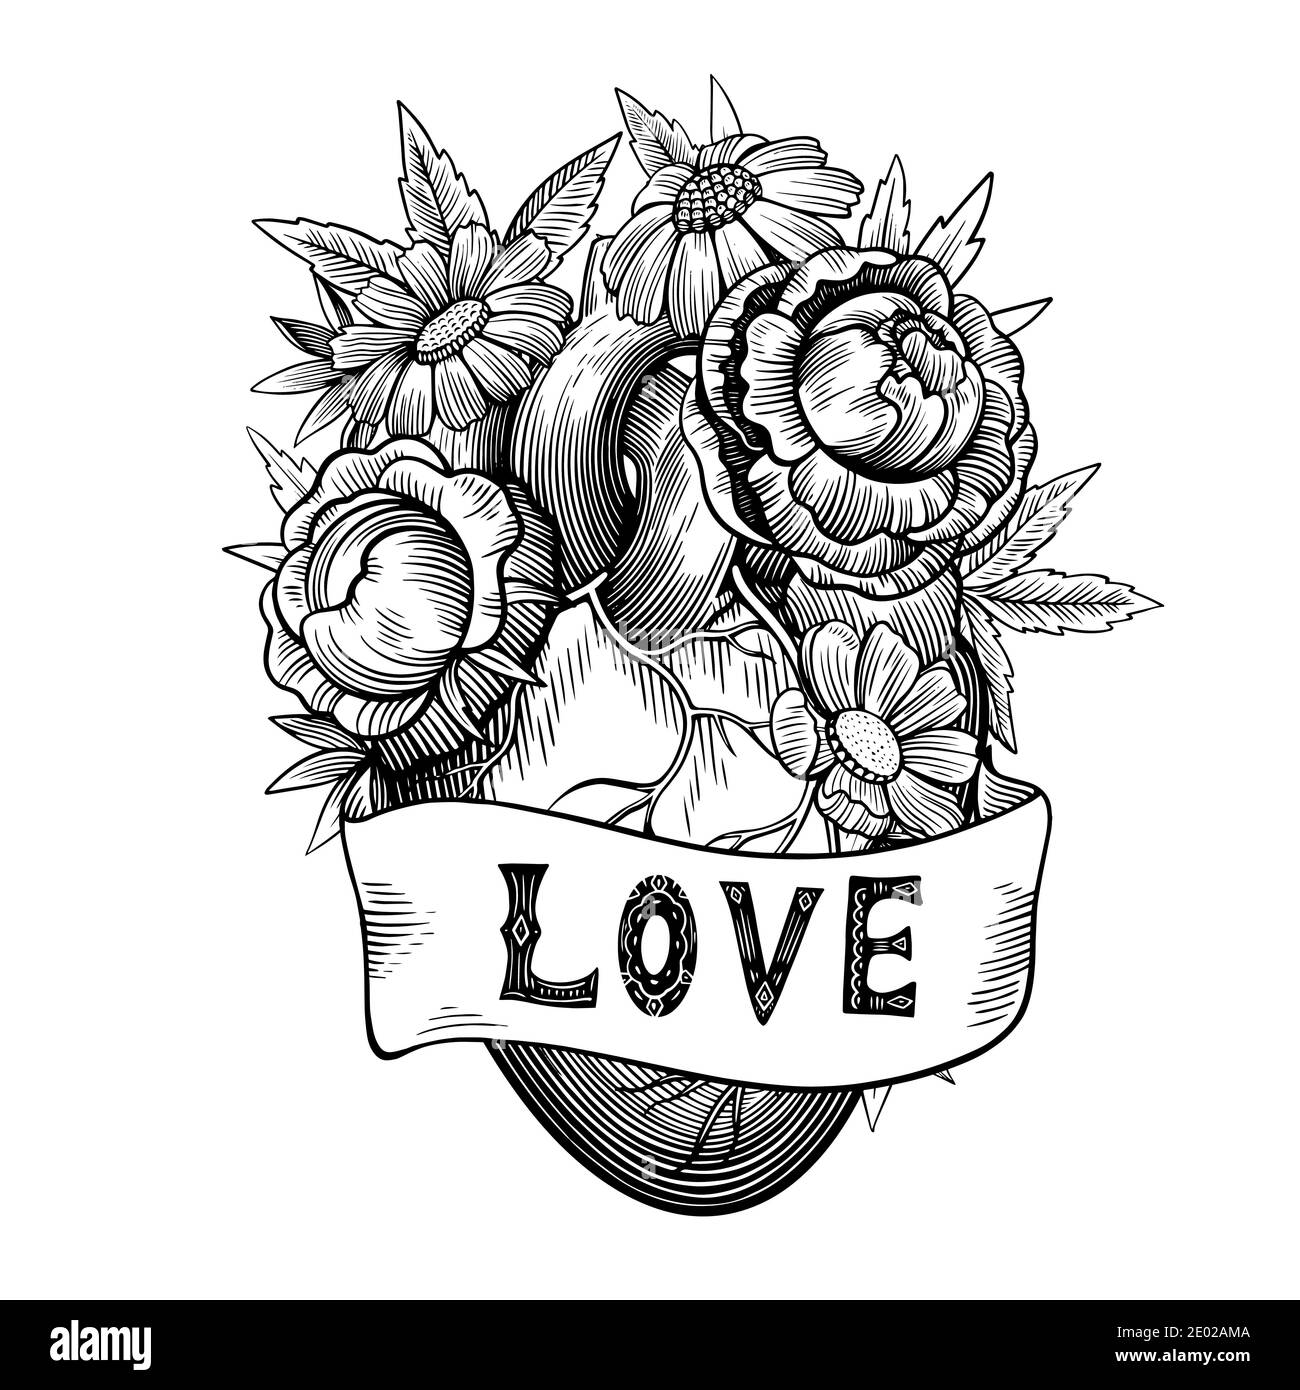 Illustration vintage de coeur avec fleurs et ruban dans le style de gravure  tatouage. Dessin vectoriel noir et blanc Image Vectorielle Stock - Alamy